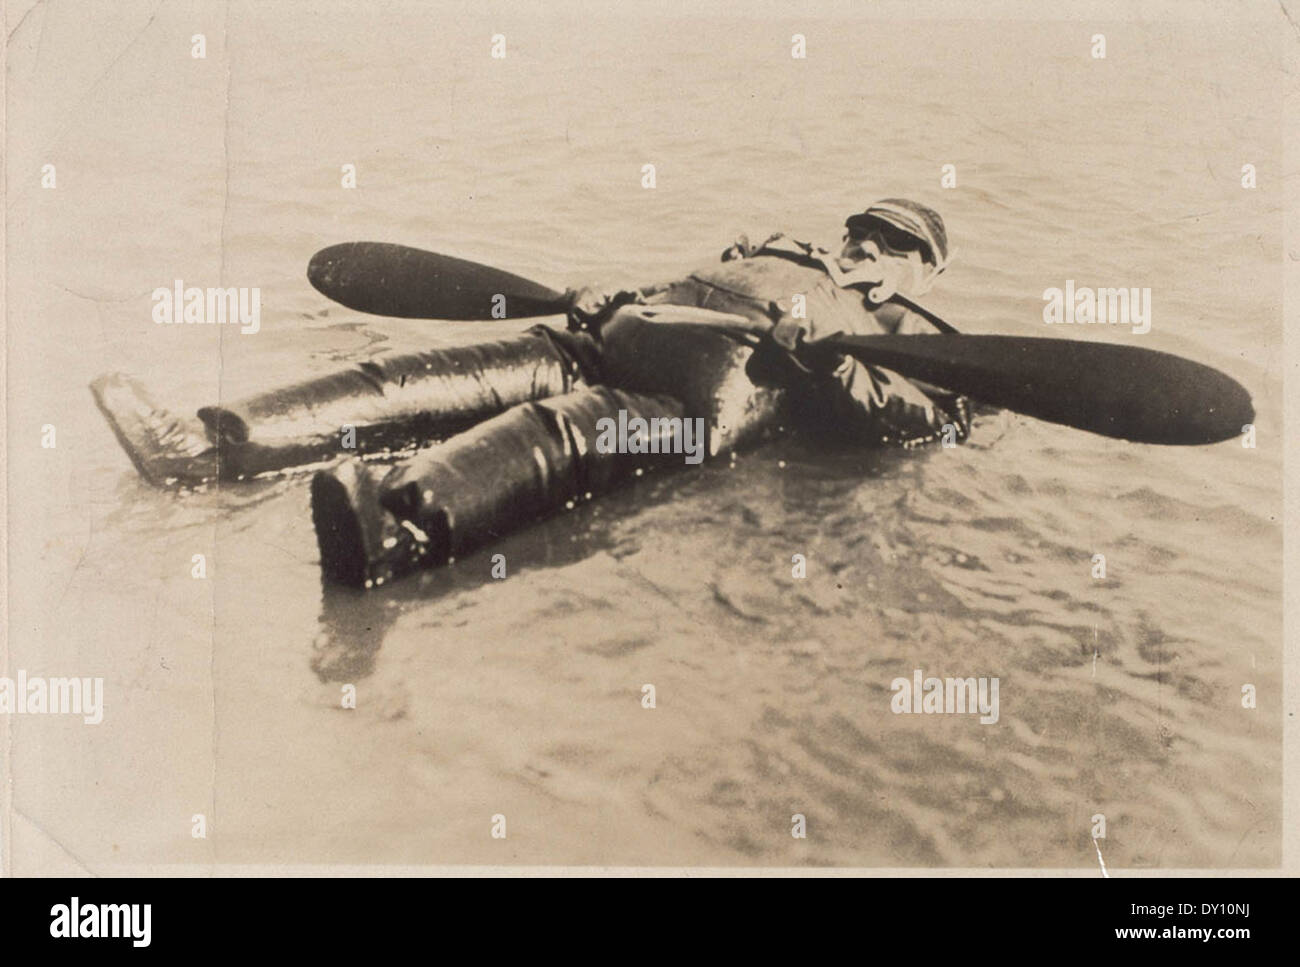 Vincent P. Taylor [in aufblasbaren Gummianzug] schwimmend auf San Francisco  Bay, 29. September 1926 / Taylor Familie Fotos Stockfotografie - Alamy